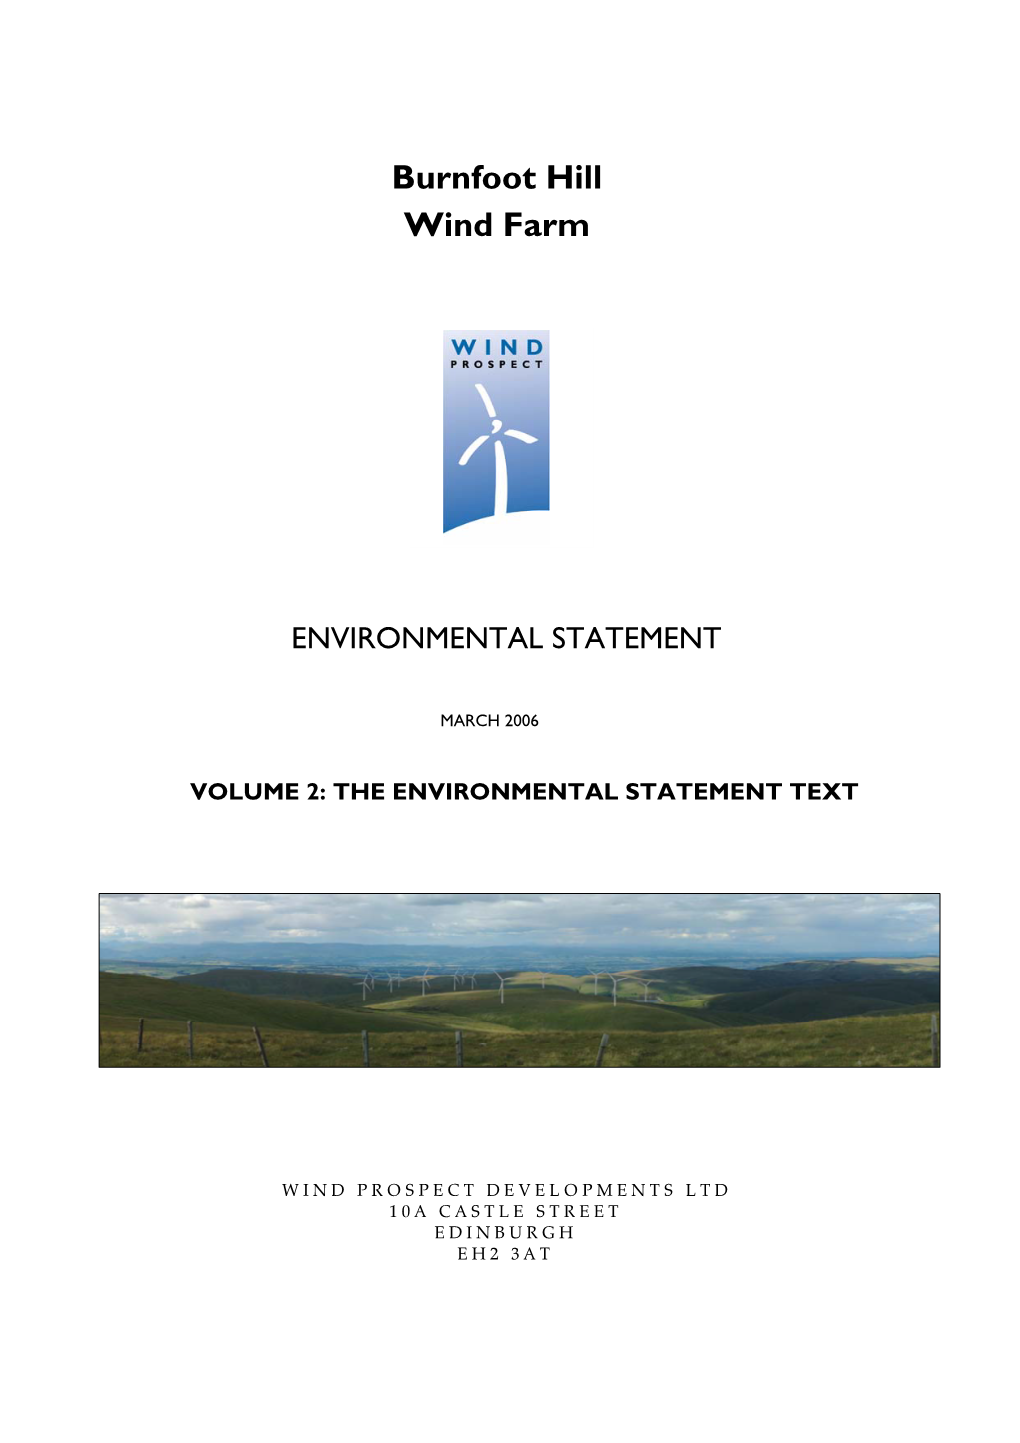 Burnfoot Hill Wind Farm